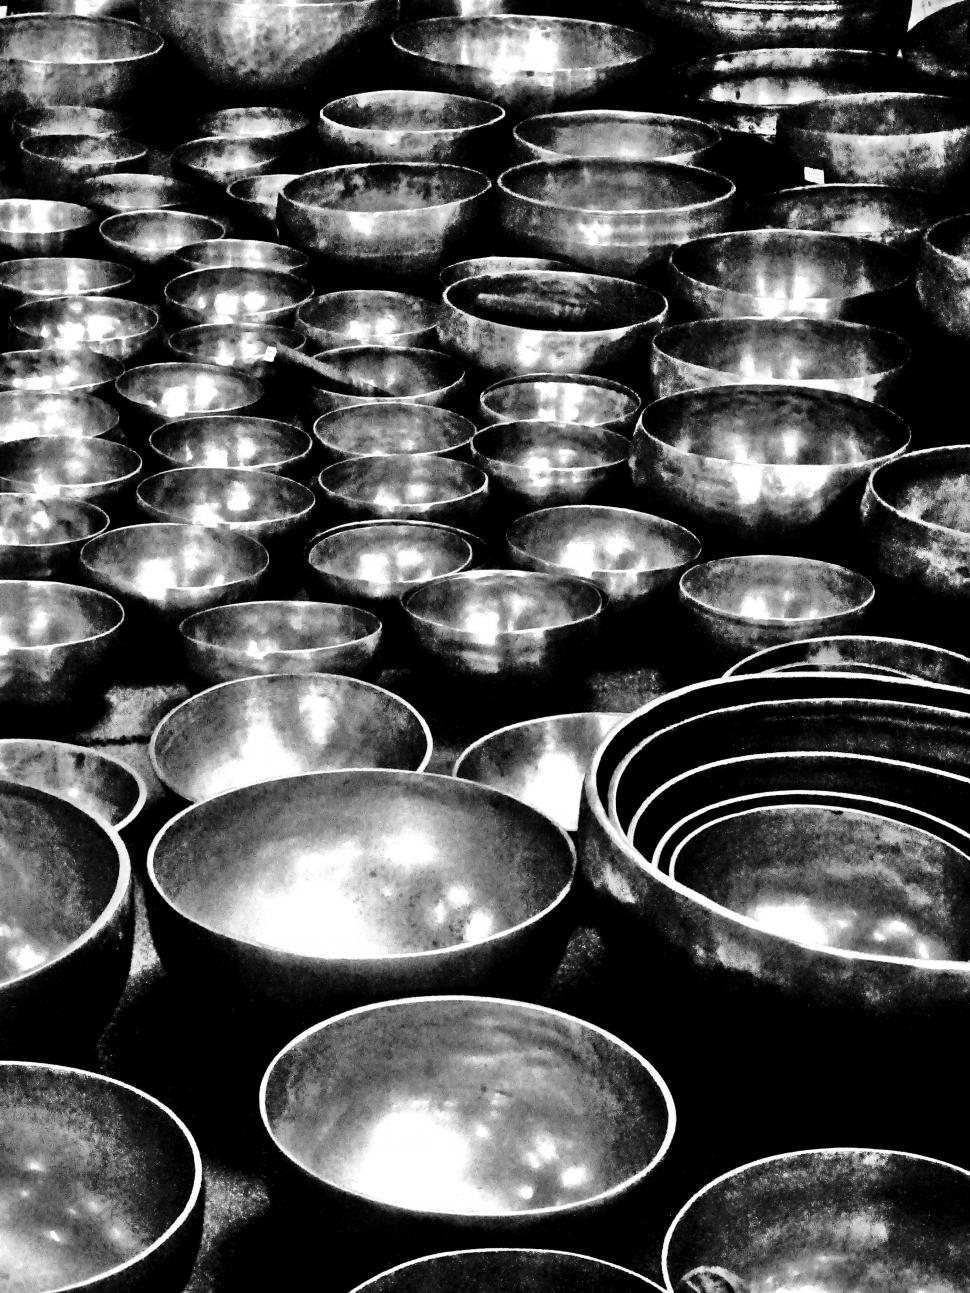 Free Image of Tibetan bowl 